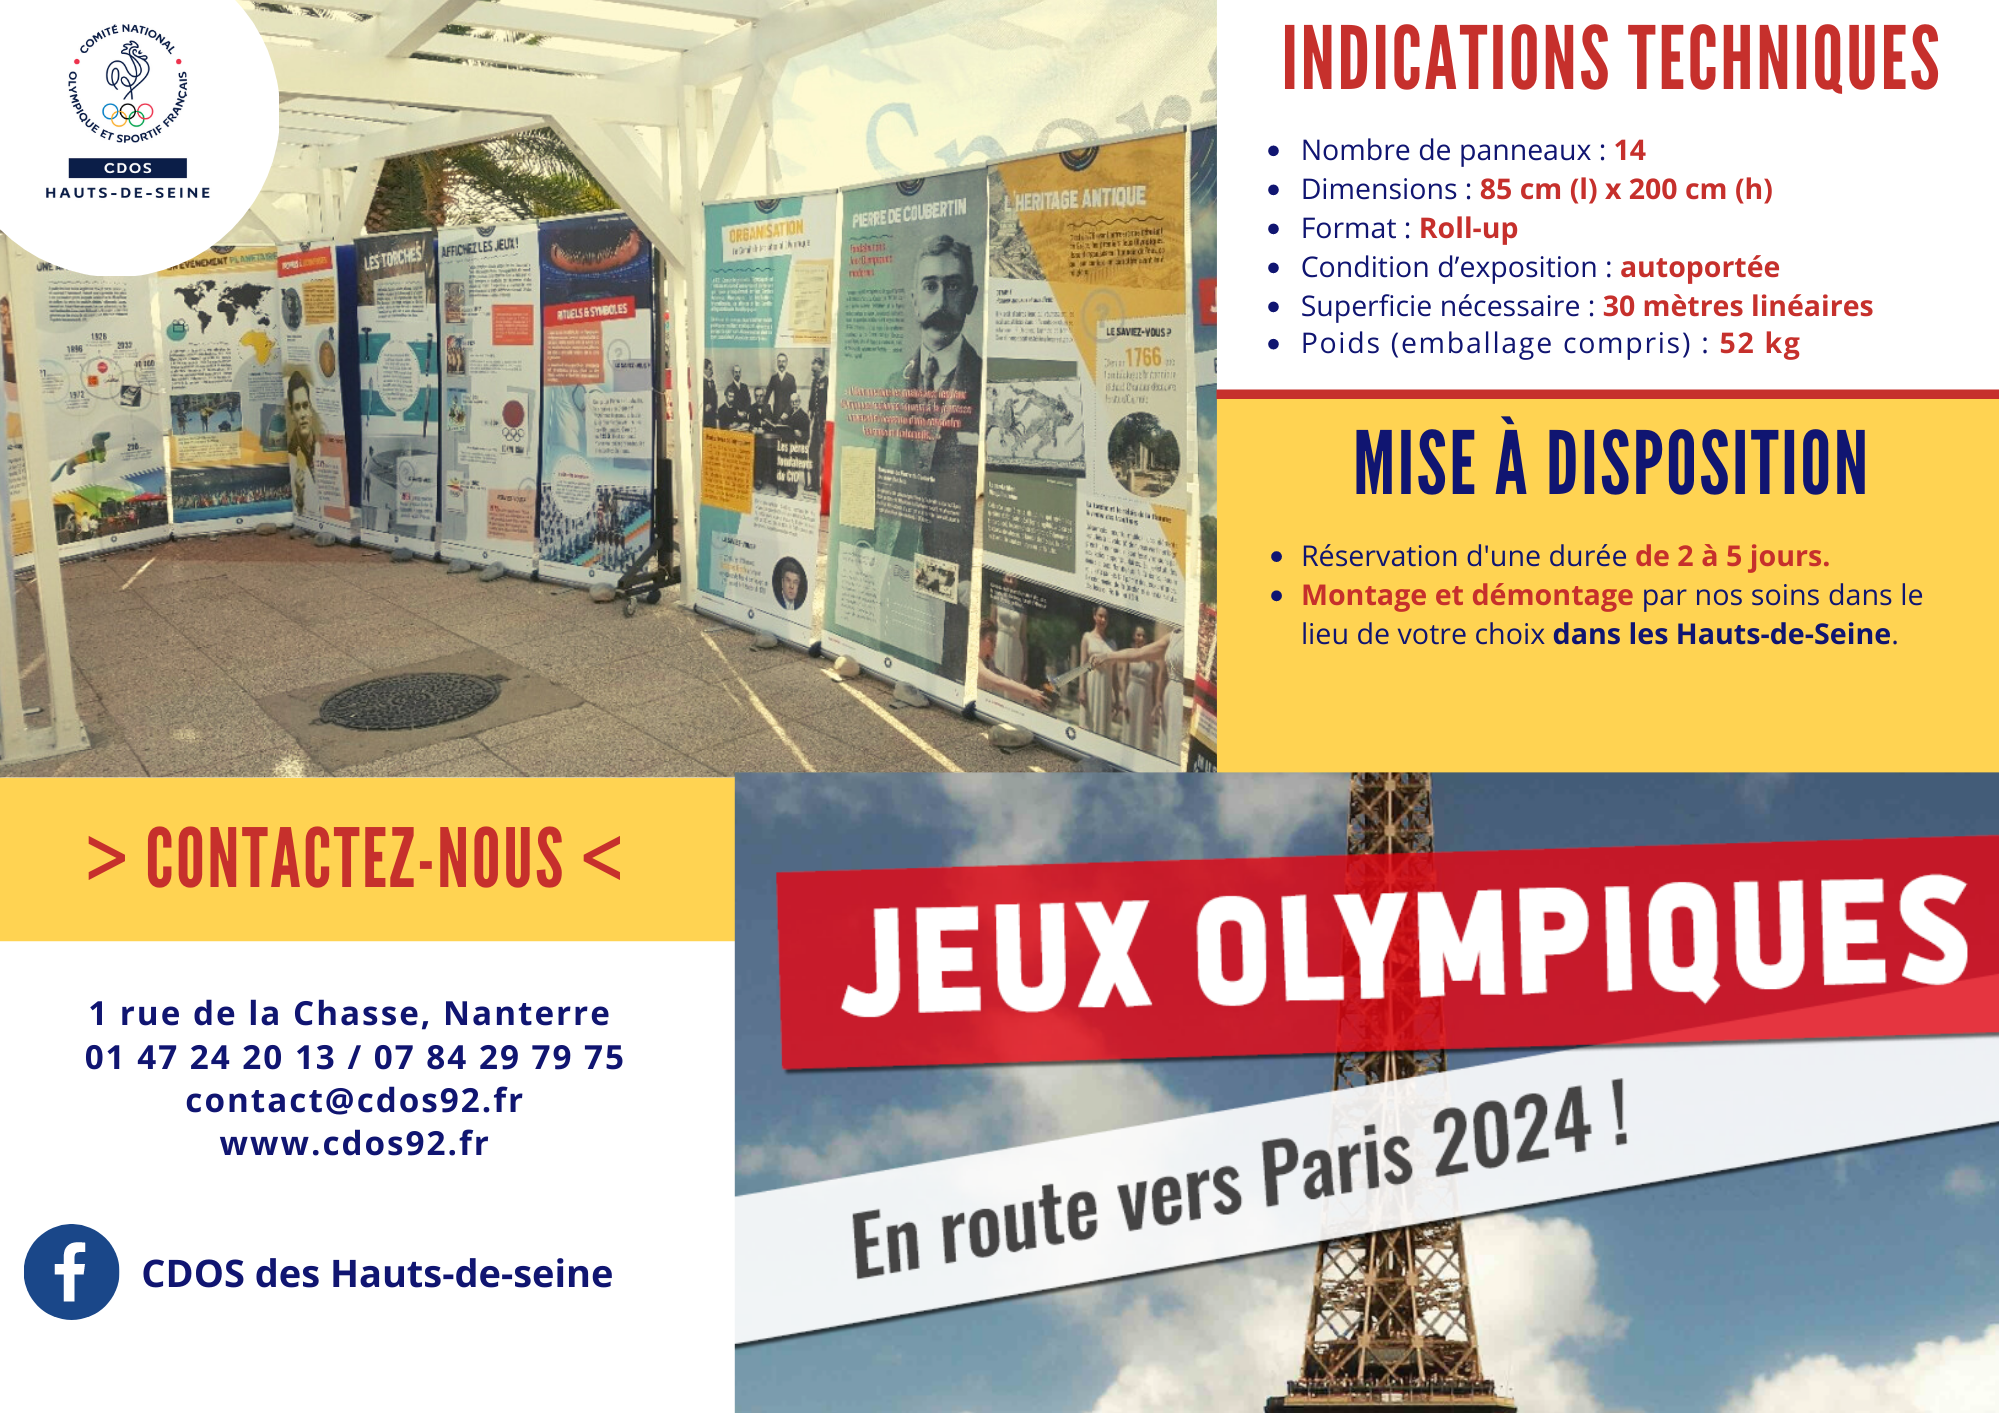 Notre Exposition itinérante - "Jeux Olympiques - En route vers Paris 2024 !"